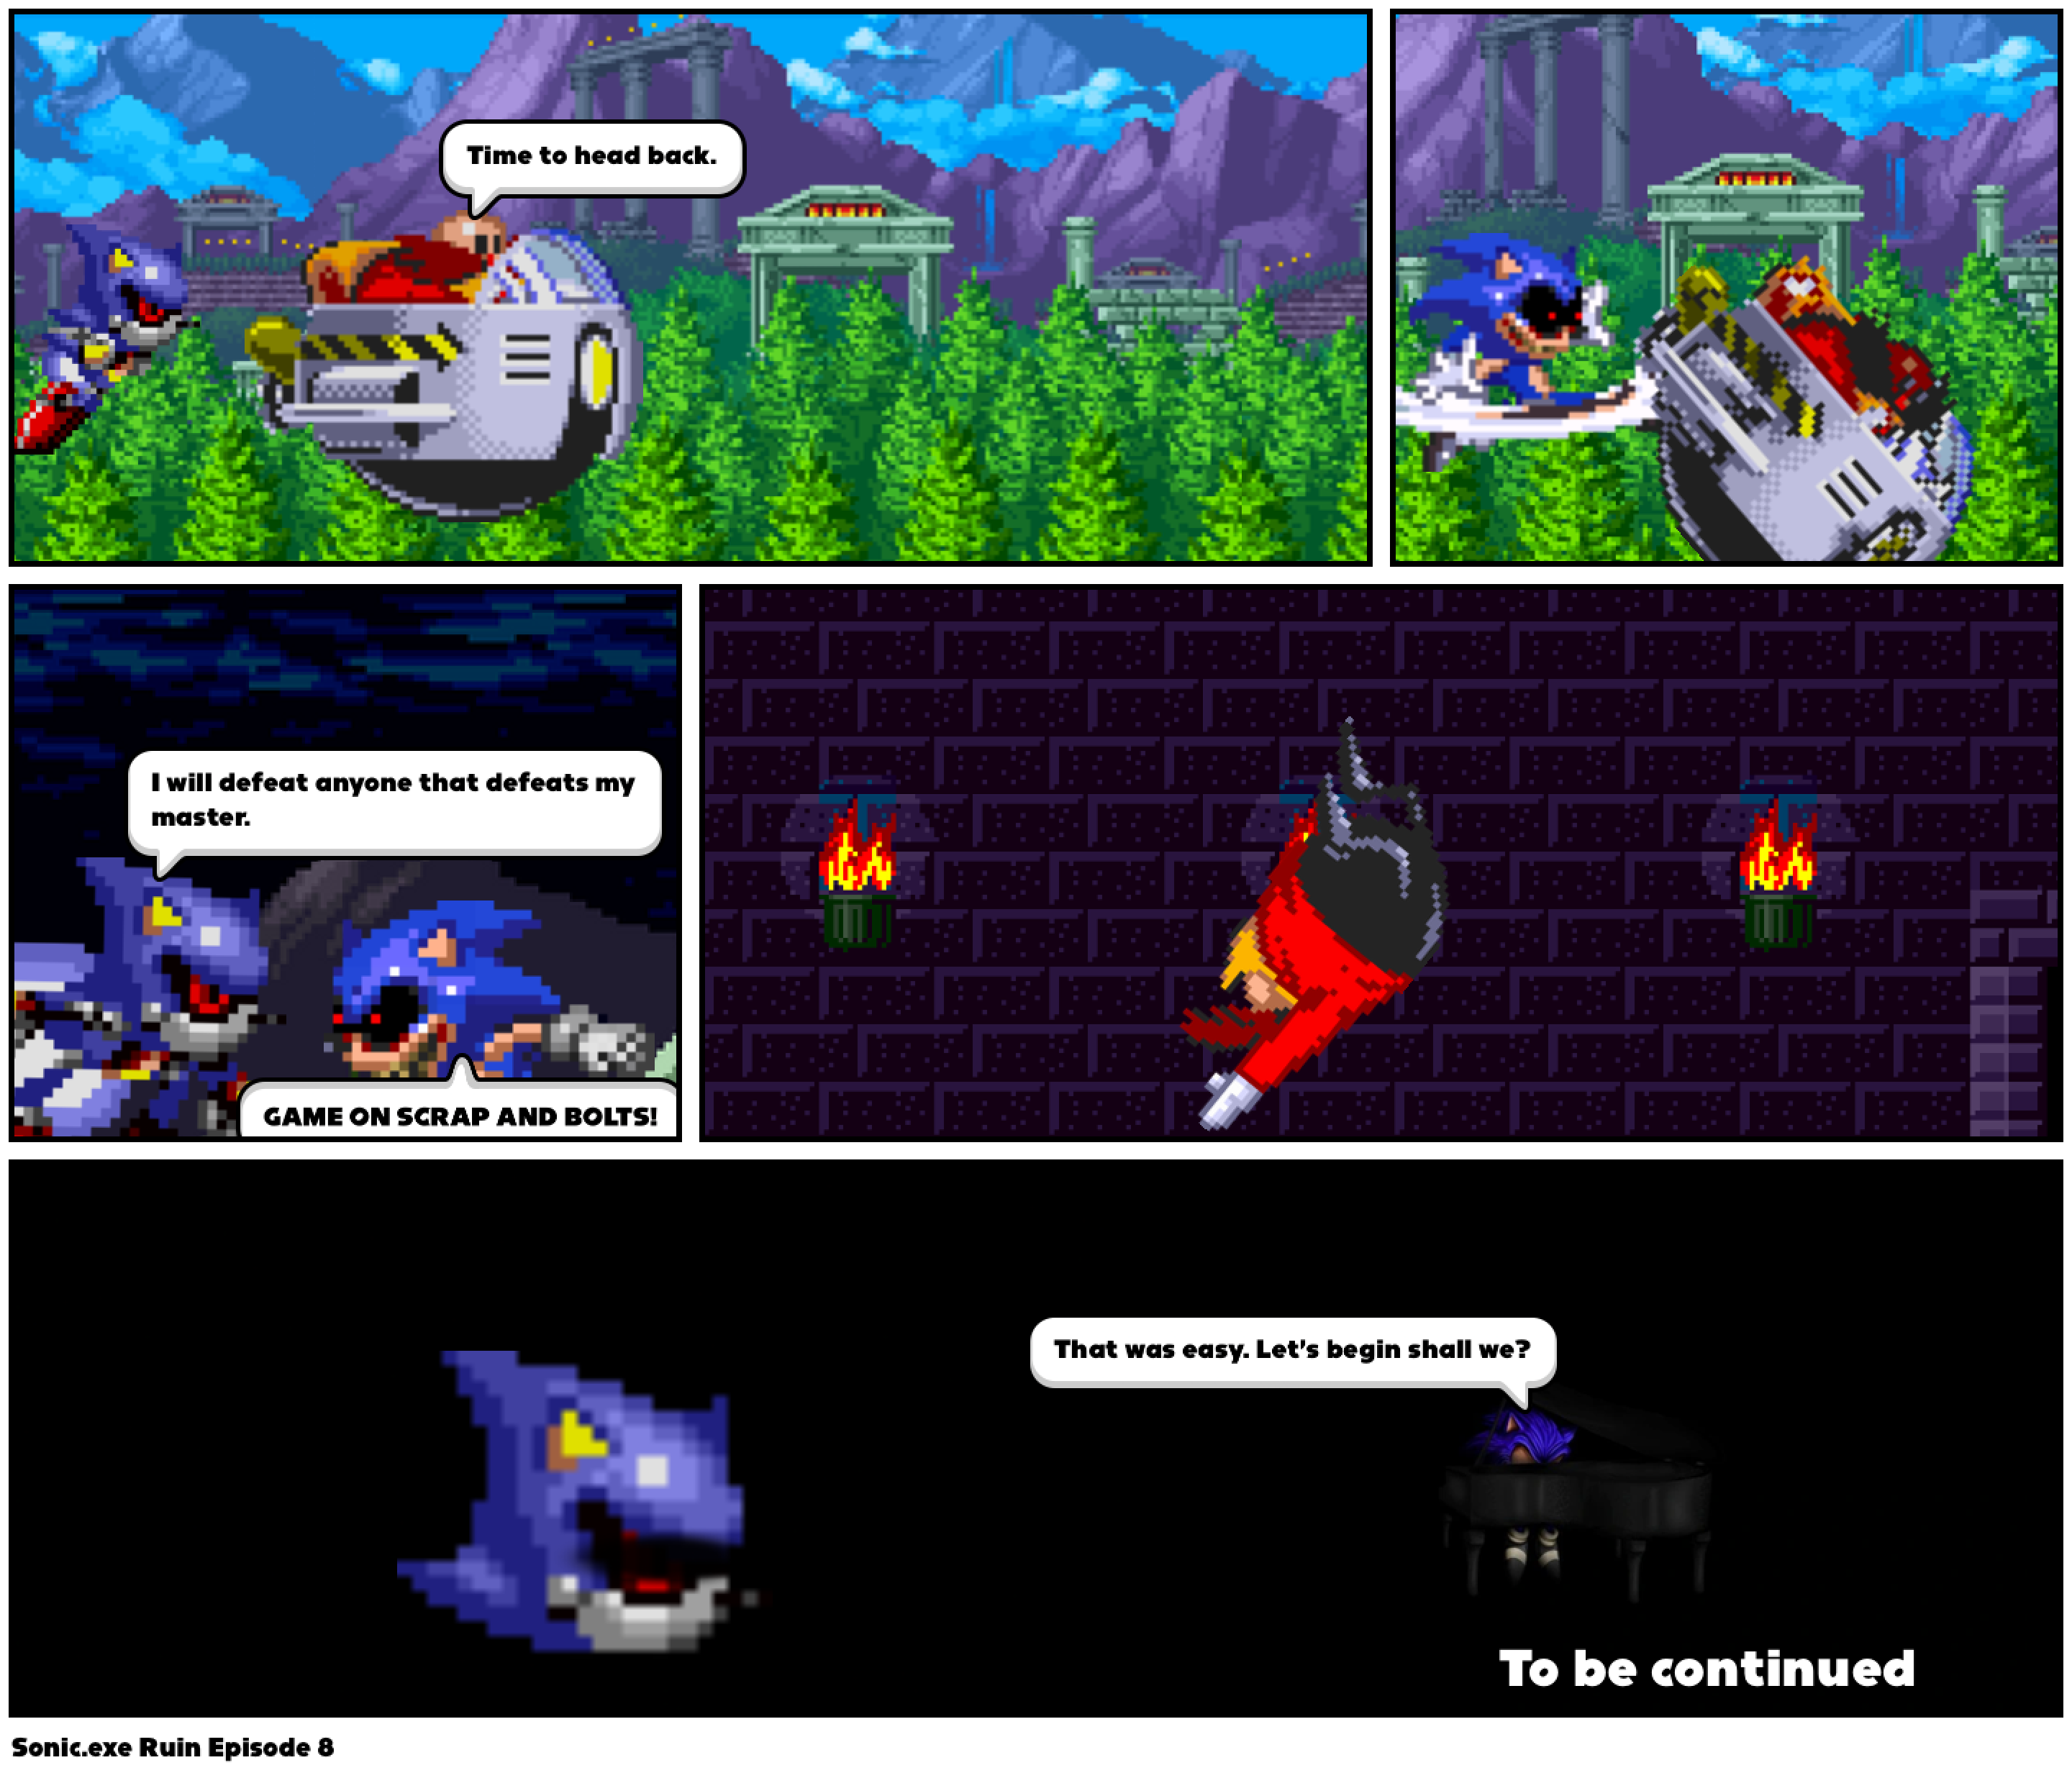 Sonic.exe Ruin Episode 8